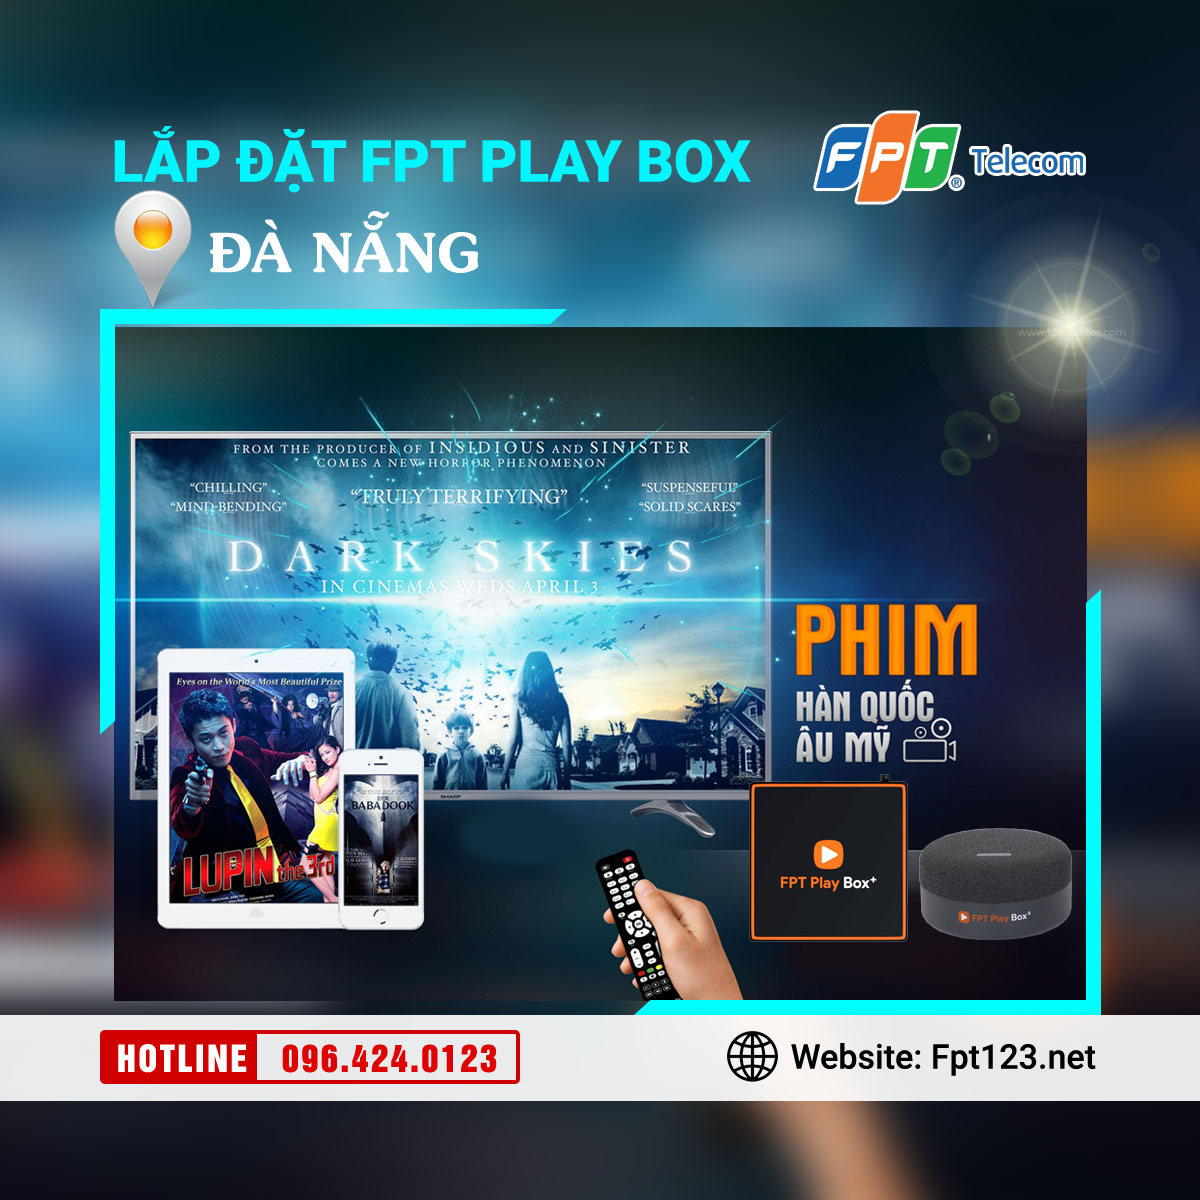 Lắp đặt FPT Play Box tại Đà Nẵng